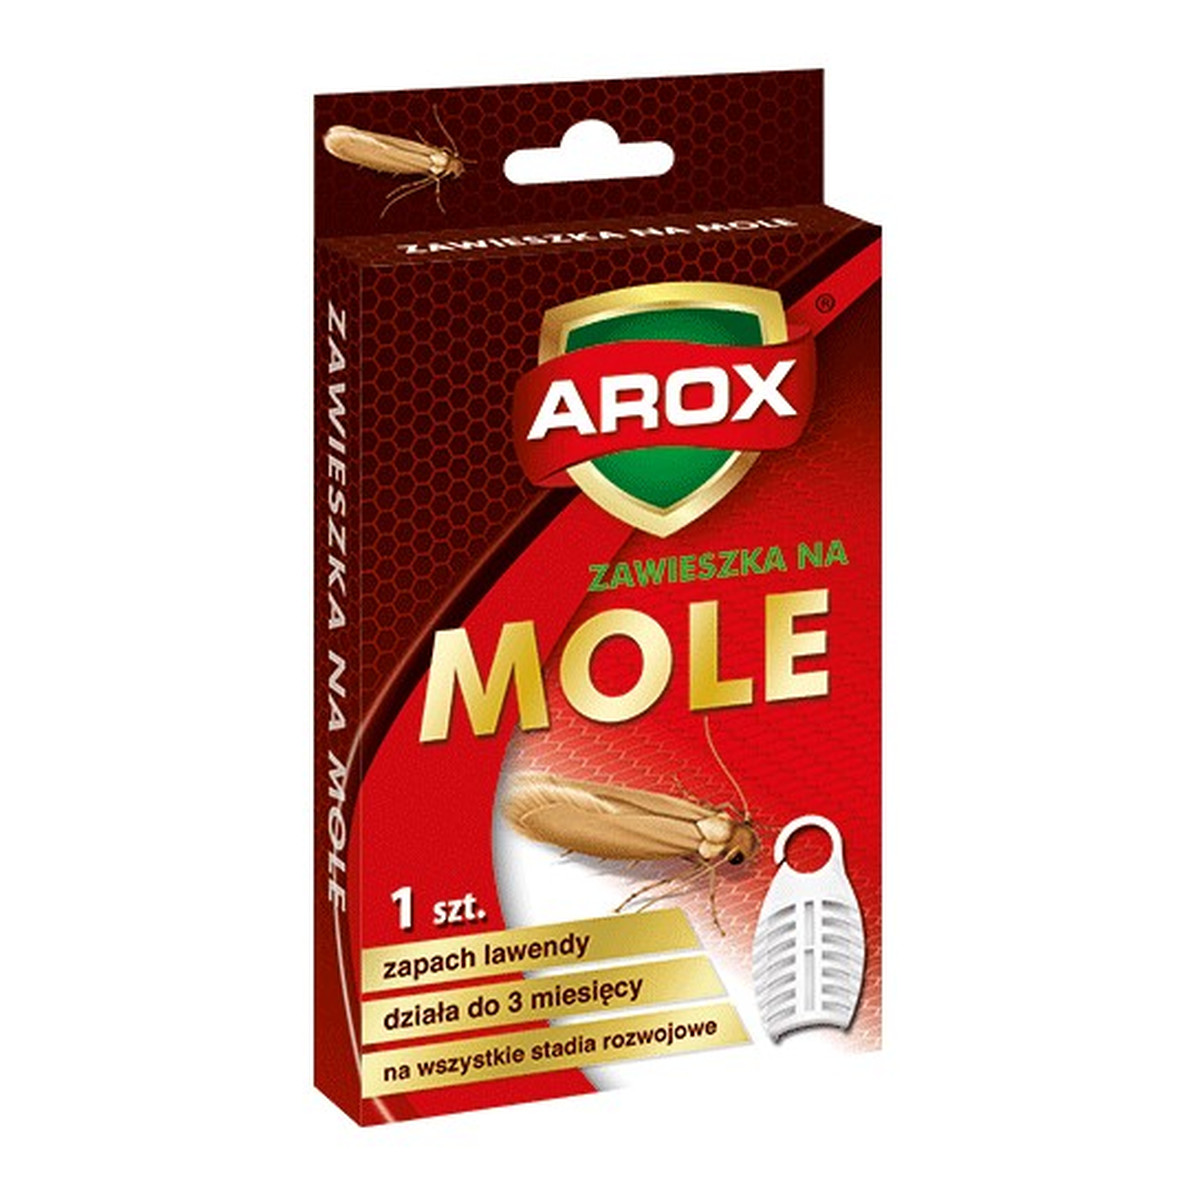 Arox Zawieszka na mole odzieżowe o zapachu lawendy, 1 szt